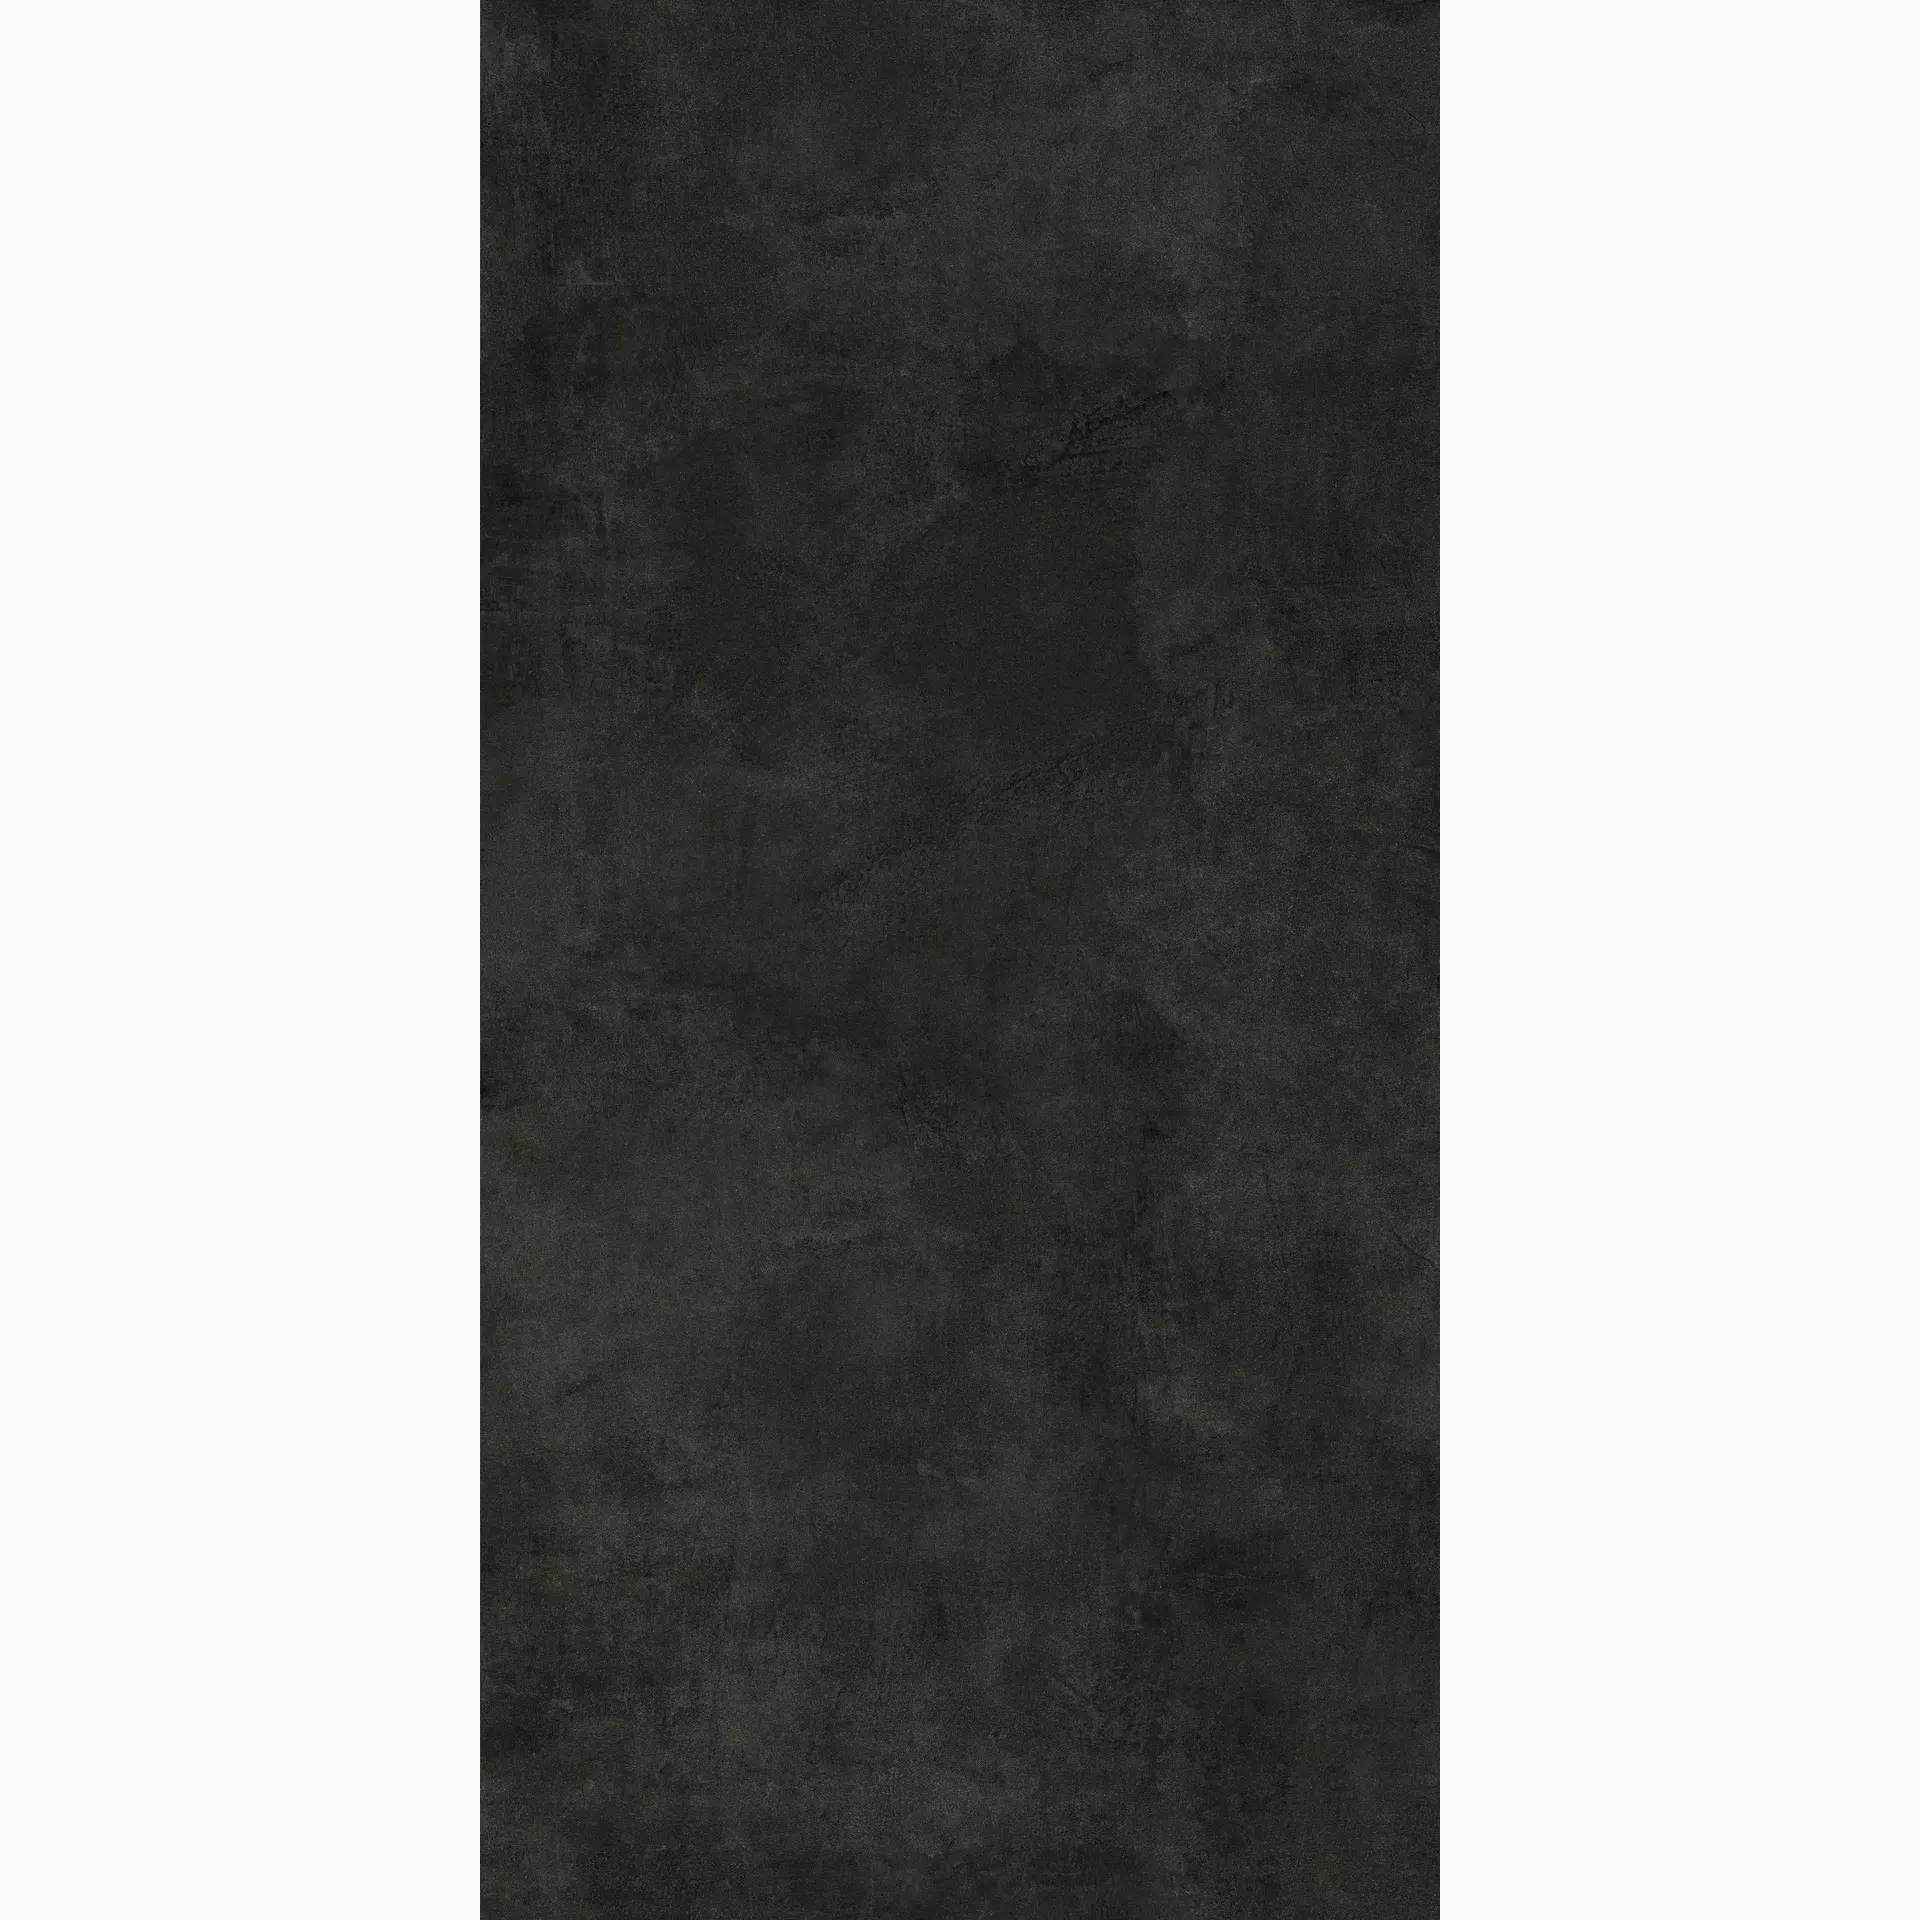 Marazzi Grande Concrete Look Black Naturale – Matt Stuoiato MNH0 160x320cm rectified 6mm